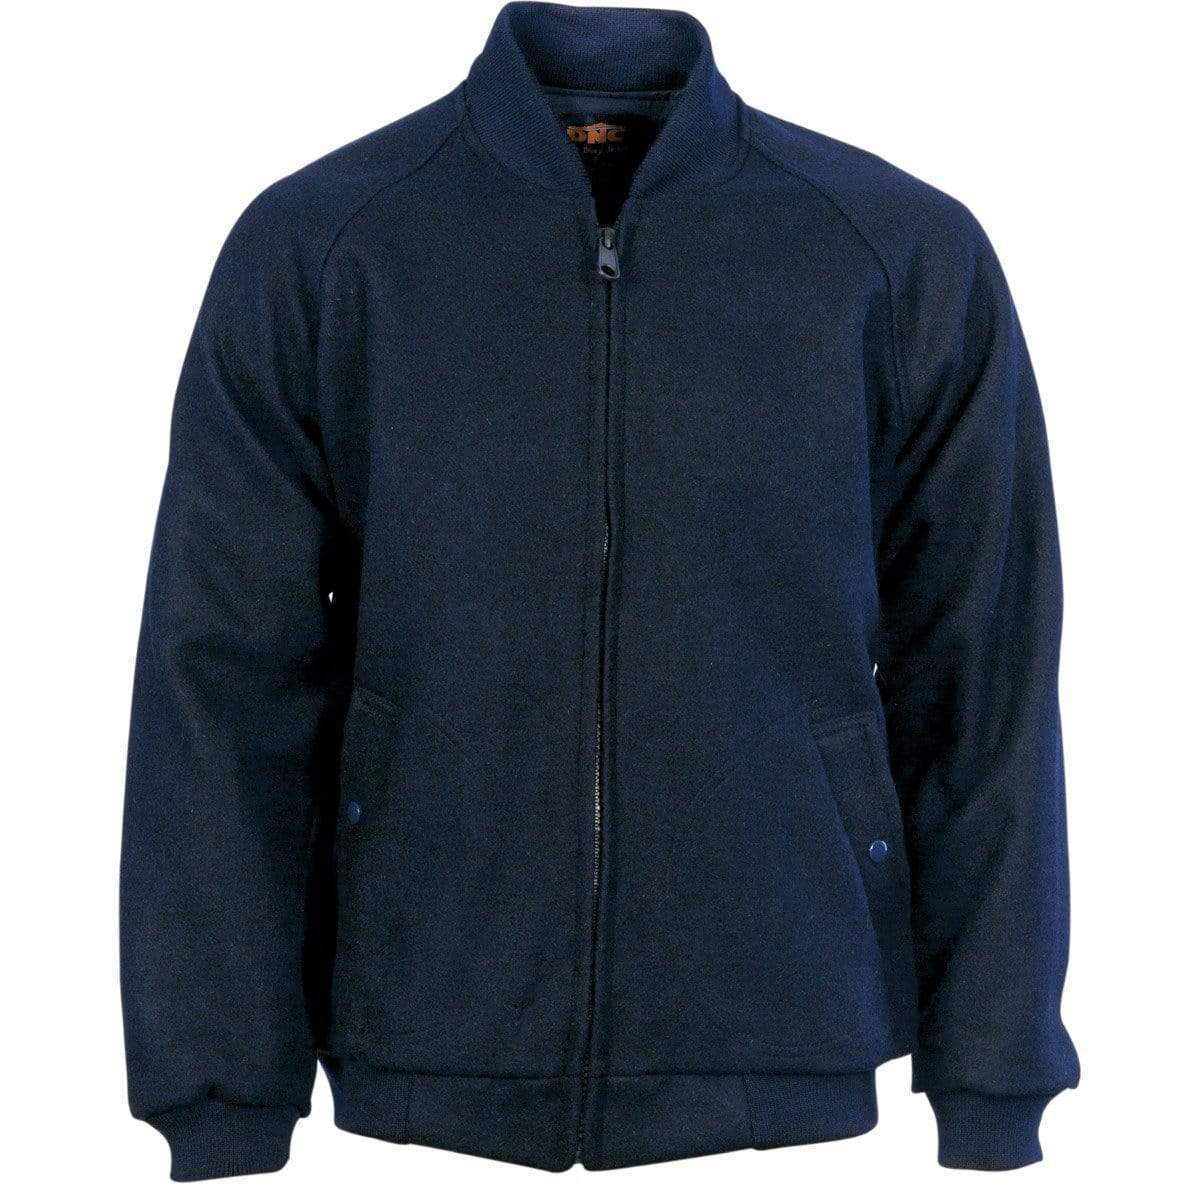 DNC WORKWEAR Bluey Jacket with Ribbing Collar & Cuffs 3602 - Simply Scrubs Australia